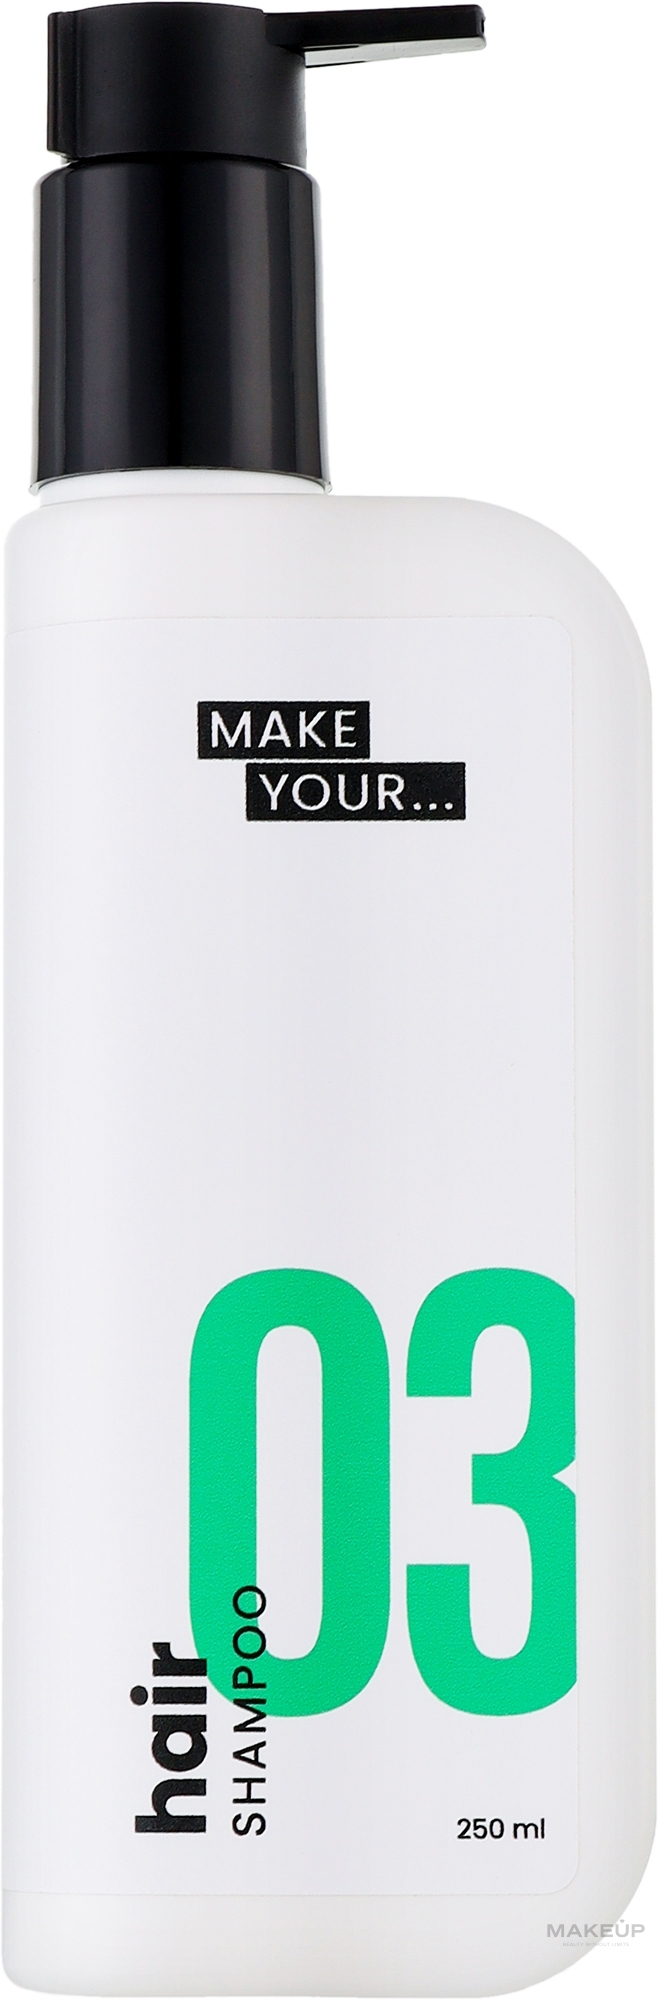 Шампунь для жирного волосся - Make Your... Hair Shampoo 03 — фото 250ml